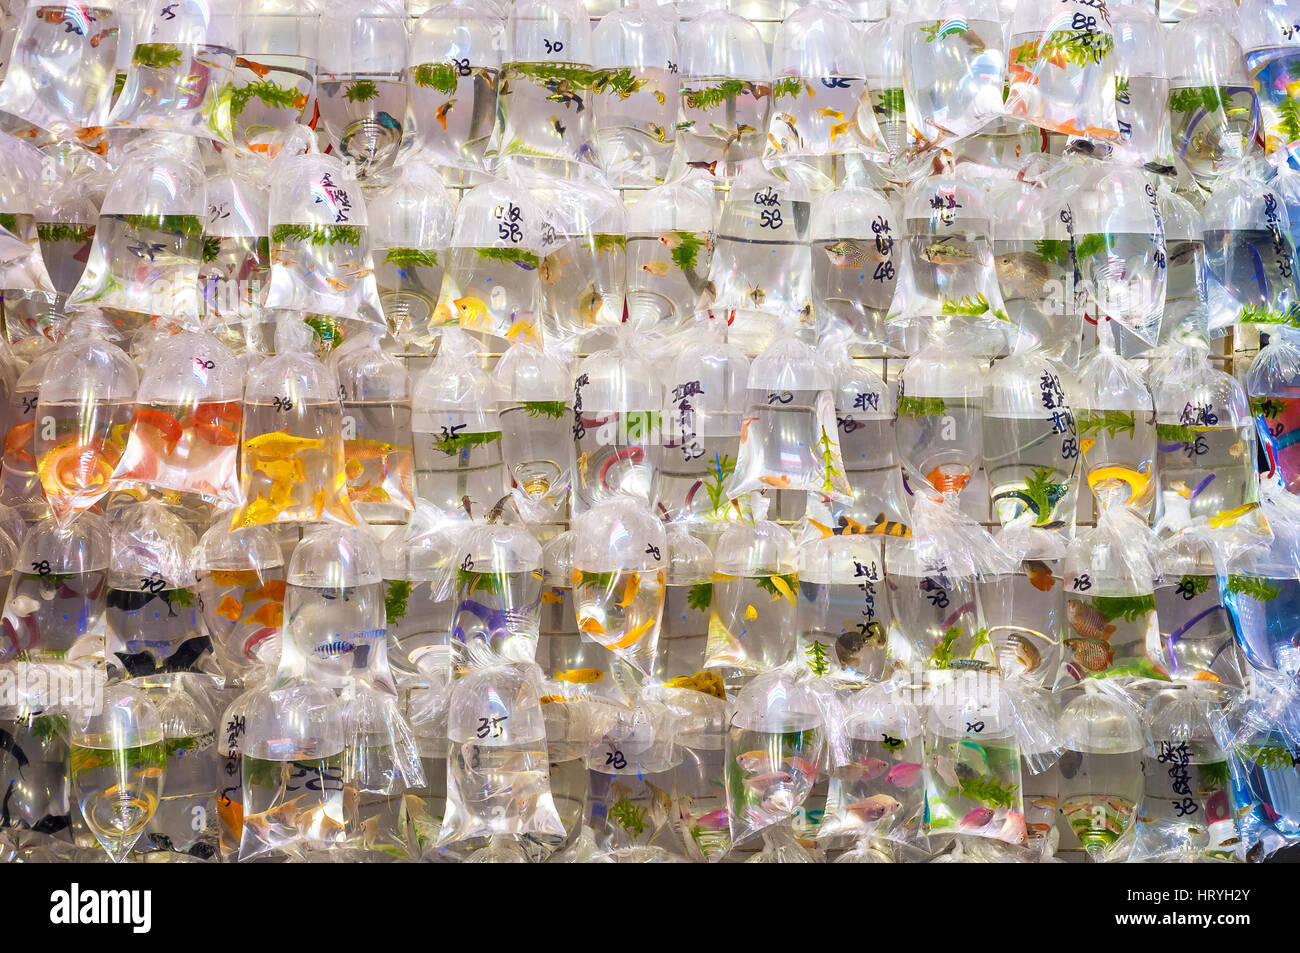 Tropical fish hanging in plastic bags at the Mong Kok goldfish market, Tung Choi Street, Hong Kong Stock Photo